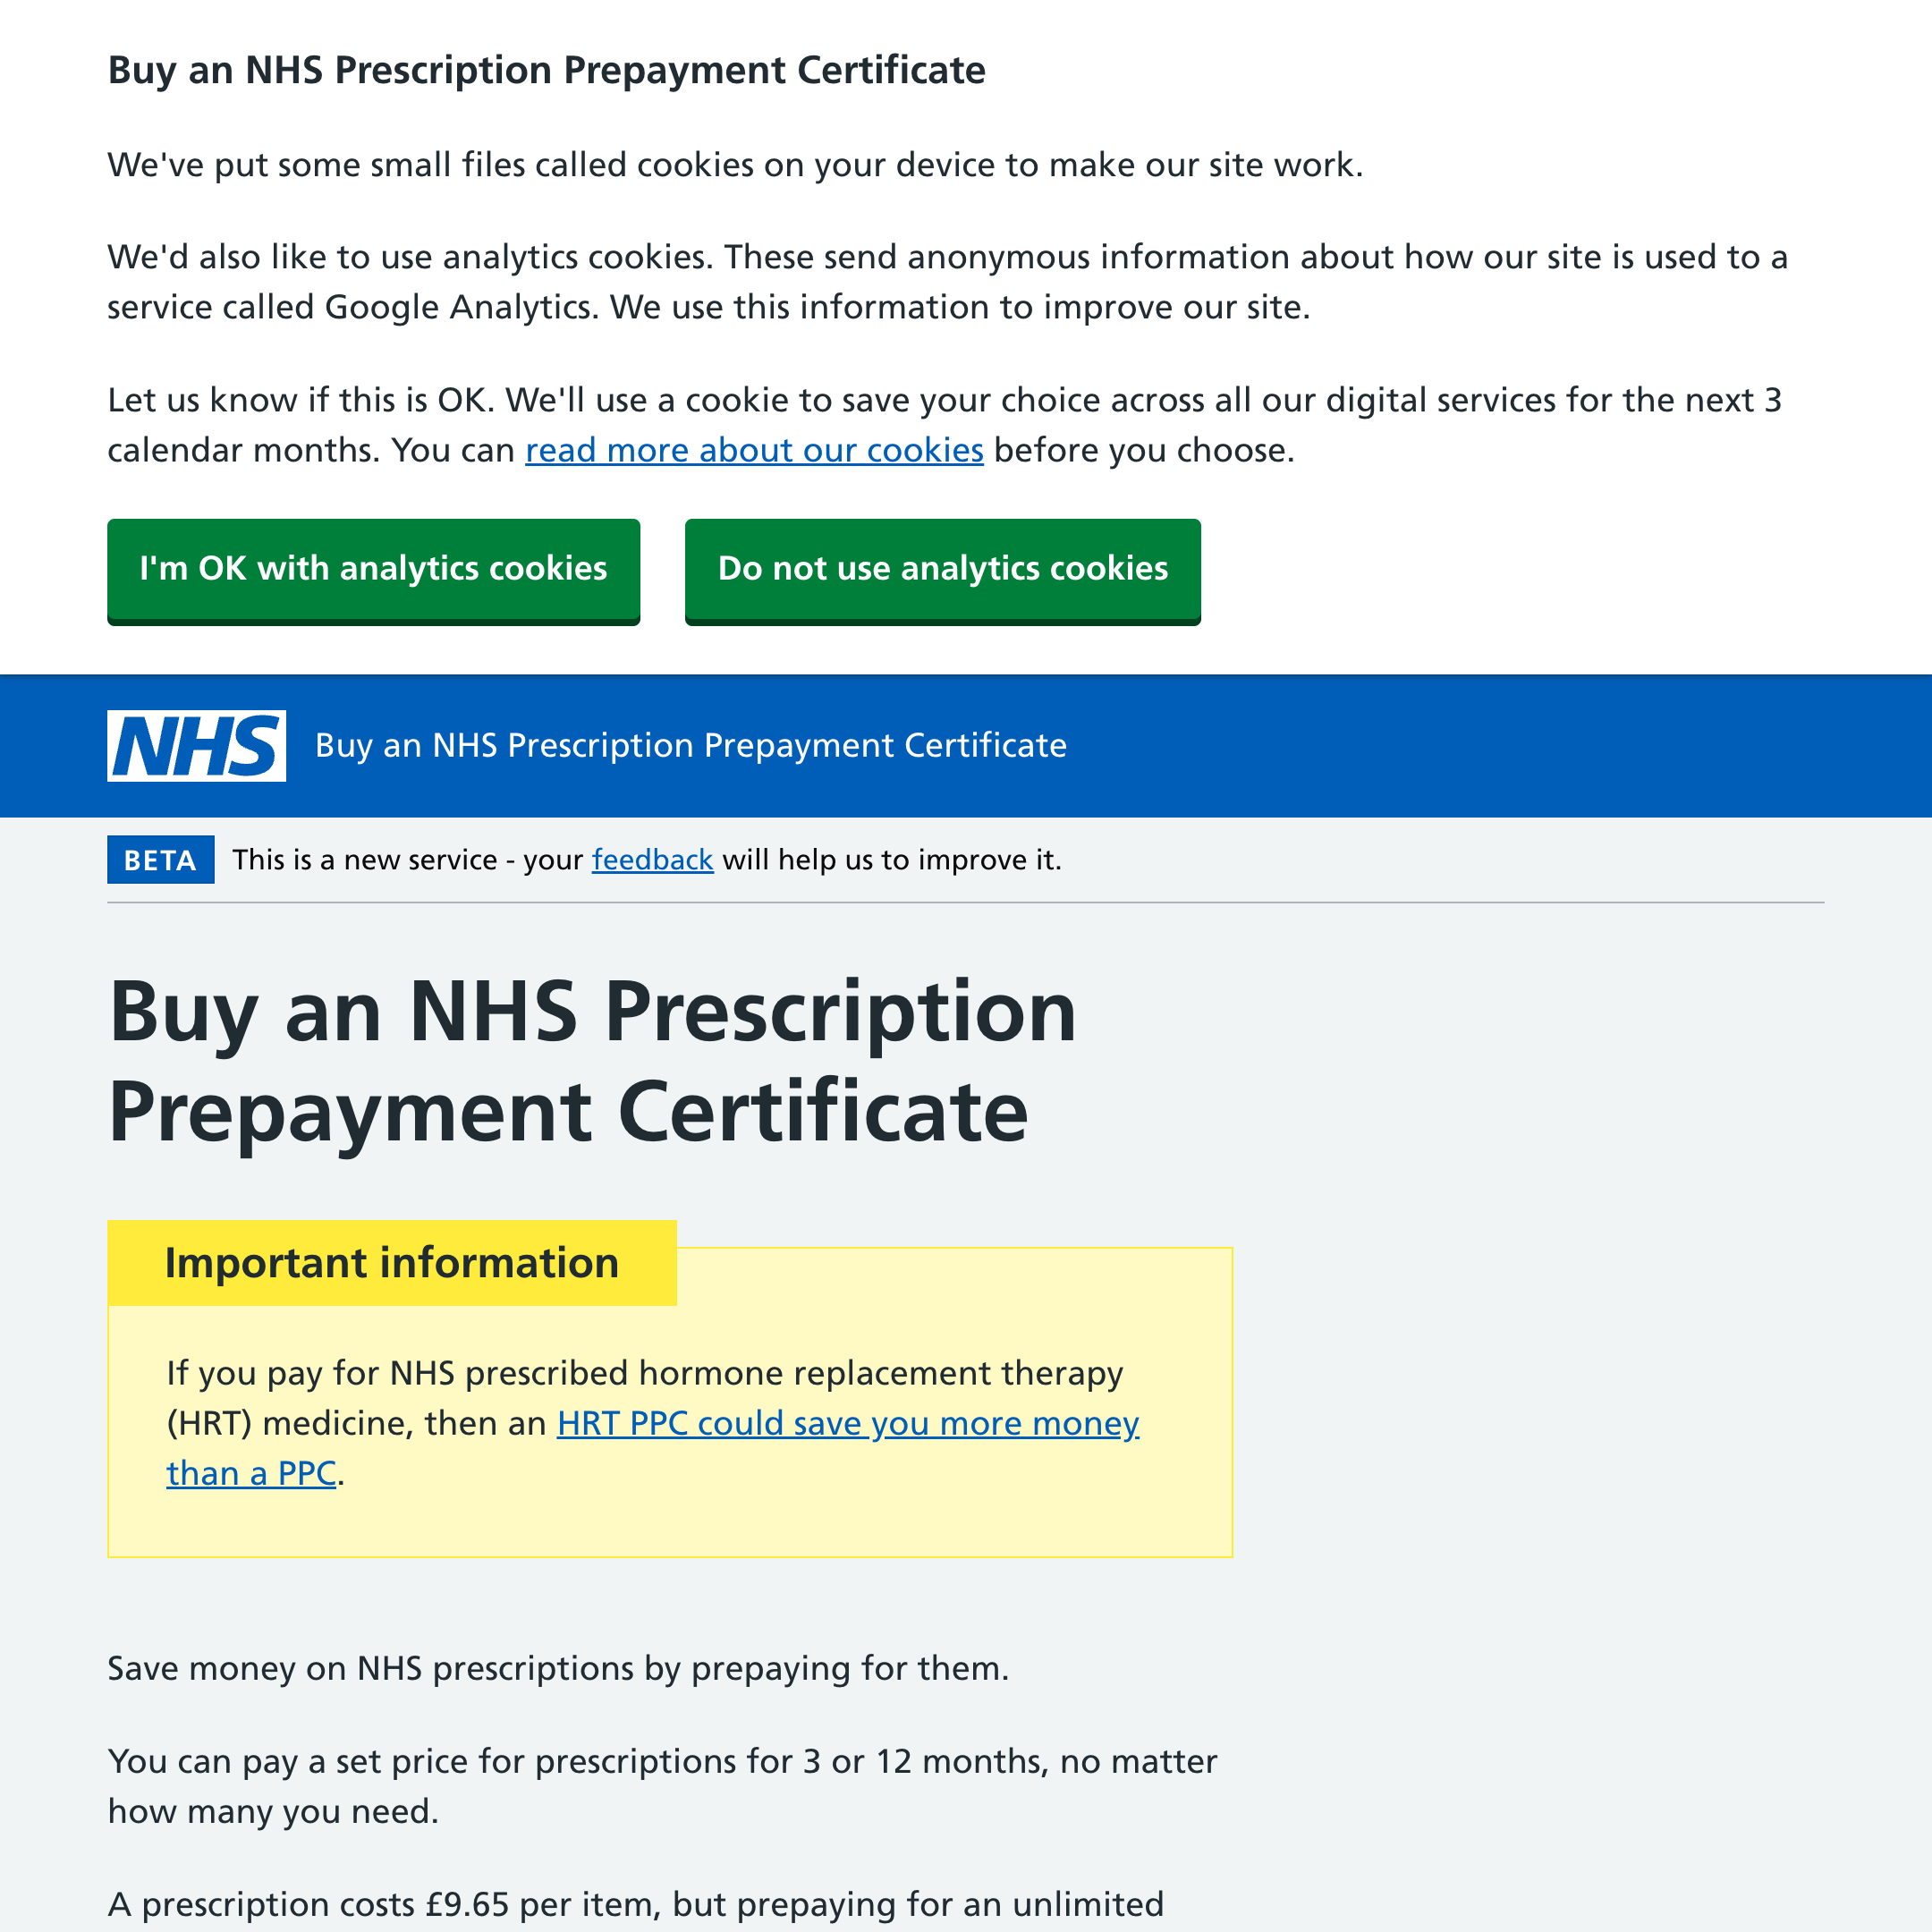 Get a prescription prepayment certificate